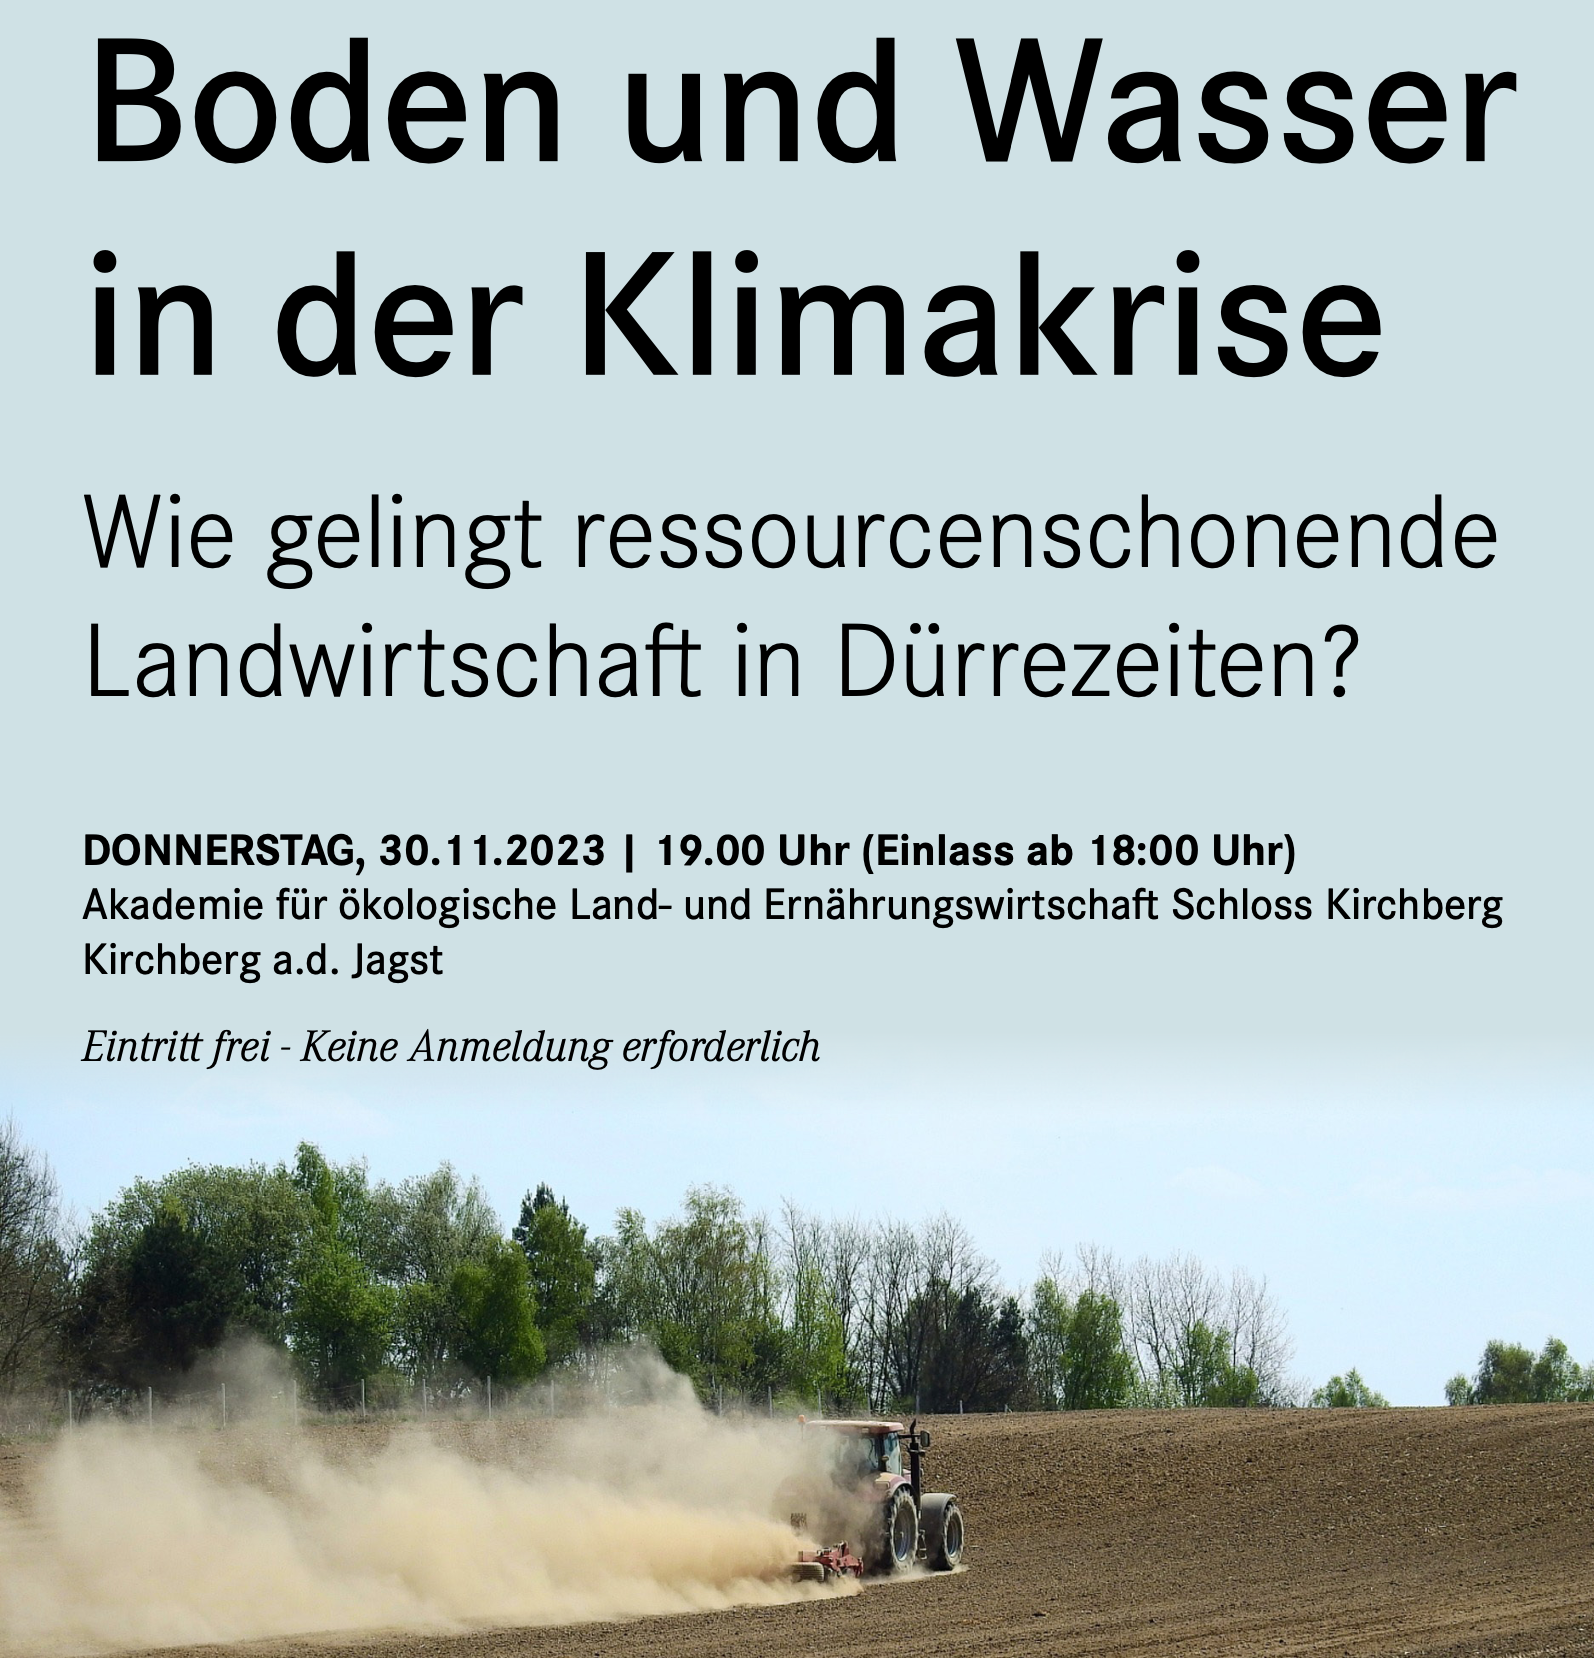 Schloss Kirchberg, 30.11.: Boden und Wasser in der Klimakrise. Wie gelingt ressourcenschonende Landwirtschaft in Dürrezeiten?